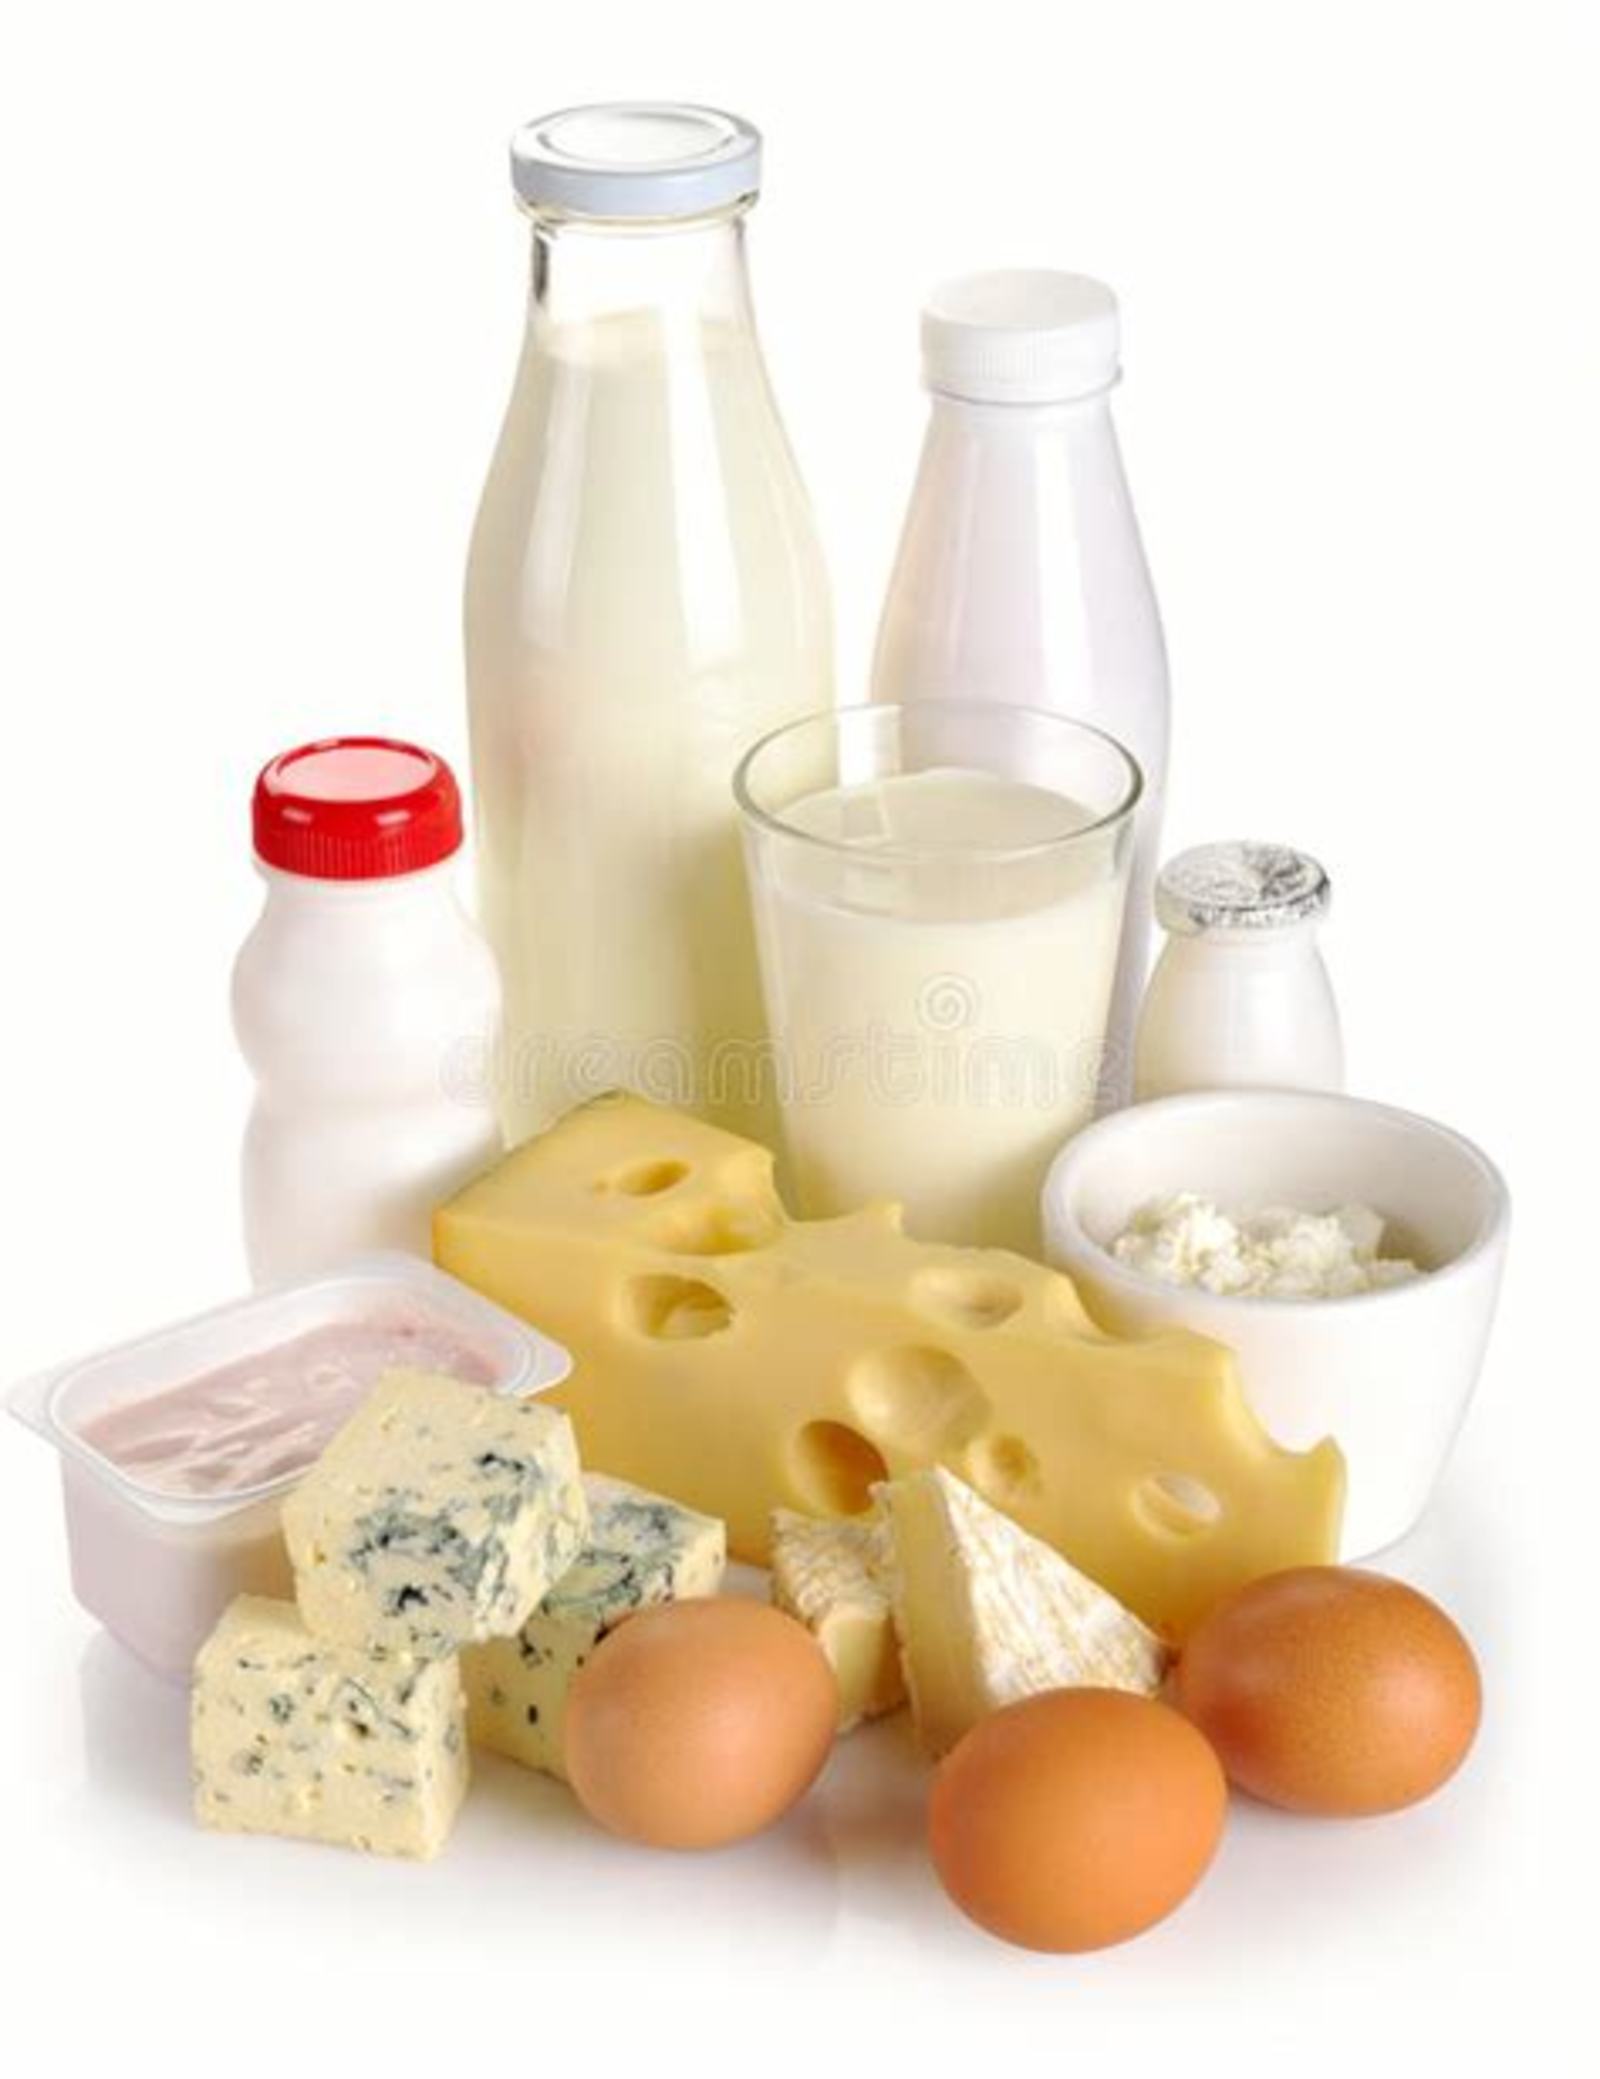 LÁCTEOS
Son ricos en calcio, el cual es fundamental en la prevención de la osteoporosis, una enfermedad común entre las mujeres. De acuerdo con la Asociación Mexicana de Metabolismo Óseo y Mineral A.C., se estima que después de los 50 años, 1 de cada 5 mujeres sufrirá una fractura osteoporótica, así que es fundamental la prevención mediante la ingesta de leche, queso y yogur. También existen opciones sin lactosa como el tofu o la leche de soya.